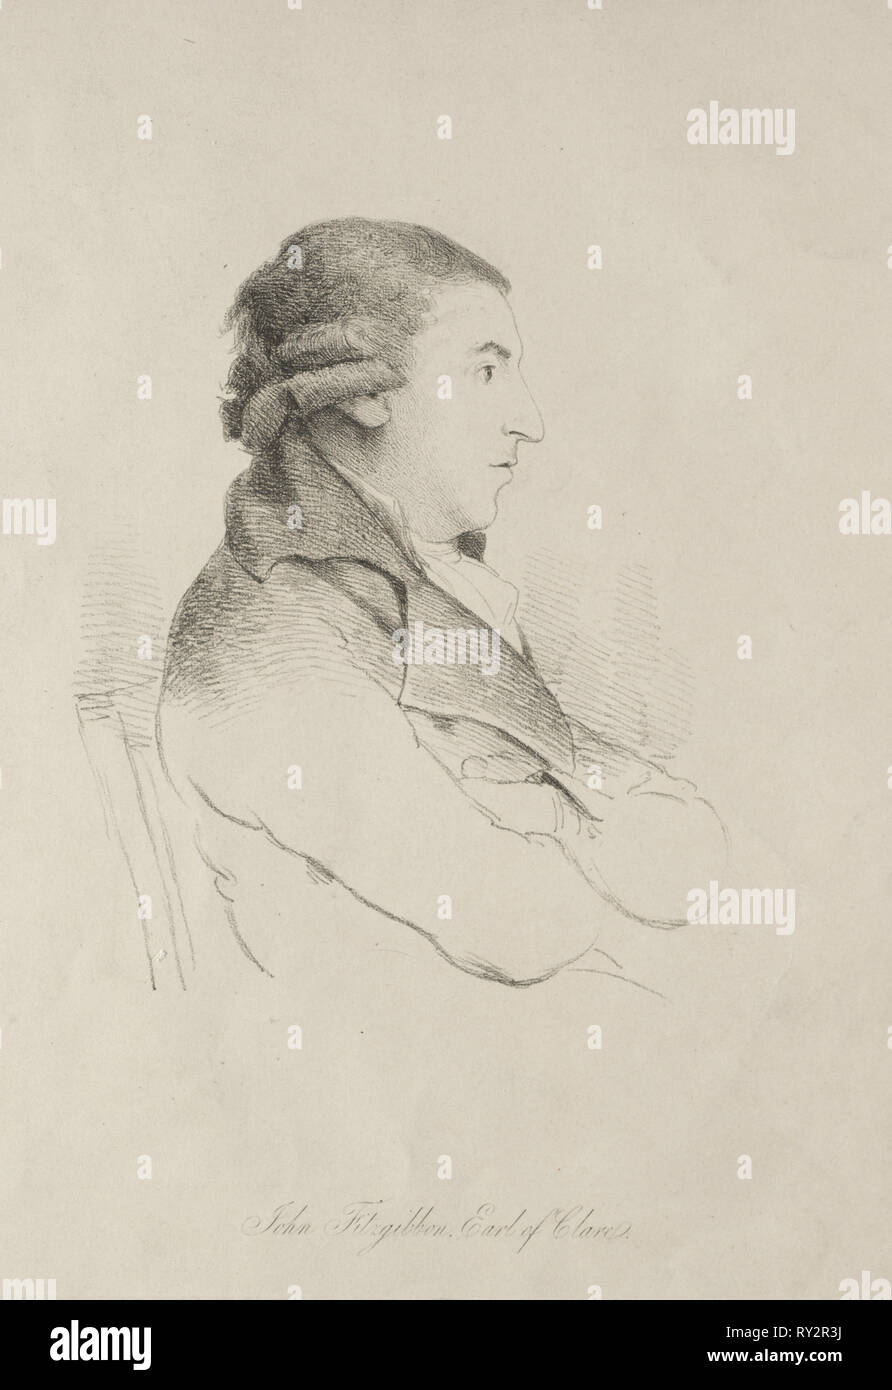 John Fitzgibbon, comte de Clare, au début des années 1800. Angleterre, début du 19ème siècle. Lithographie Banque D'Images